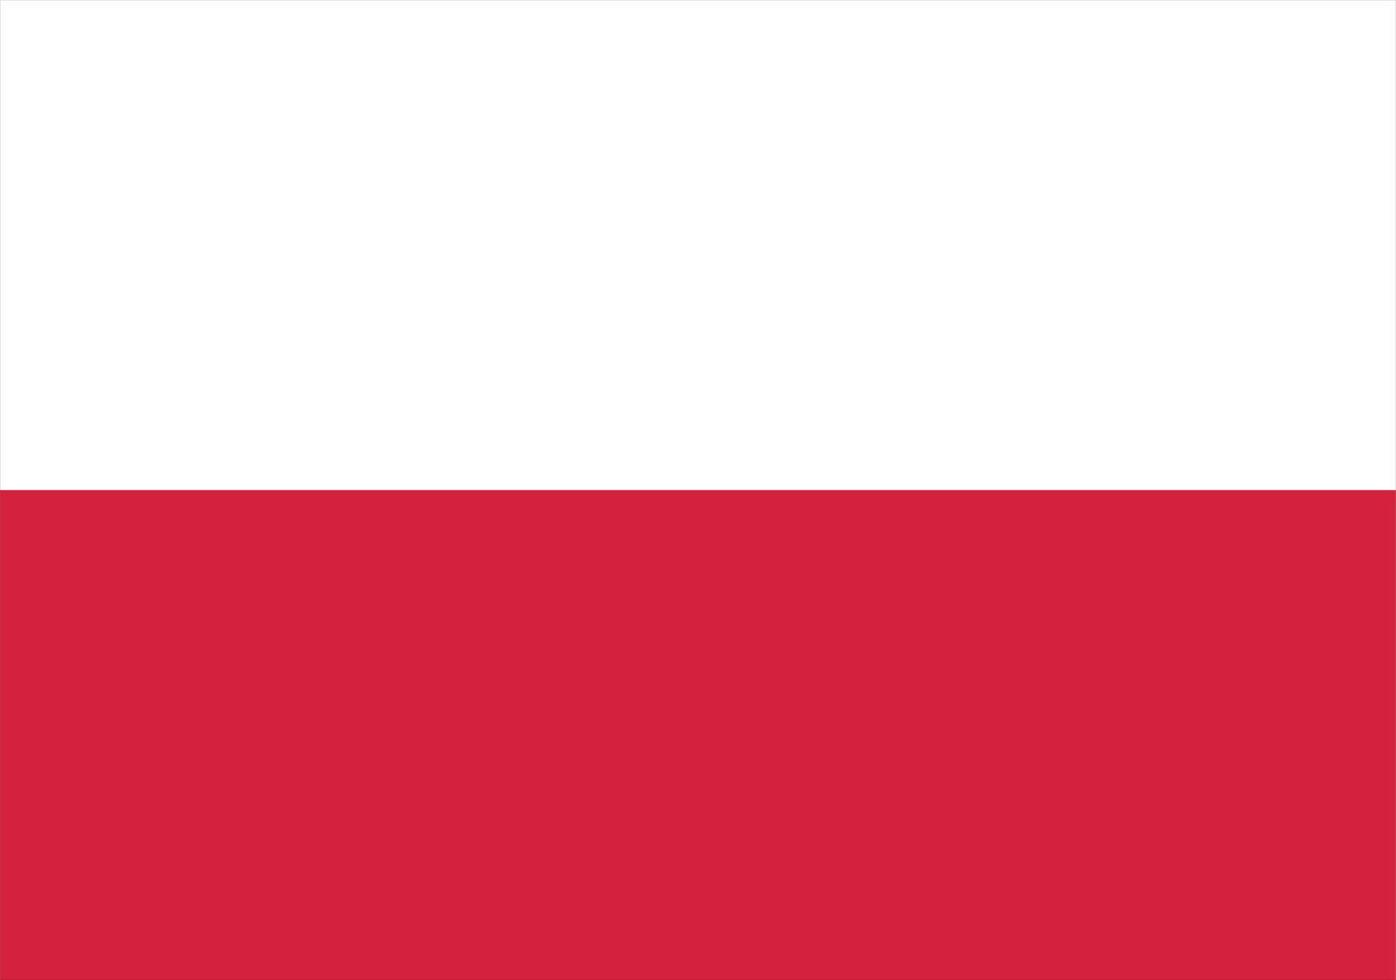 Poland flag, flag of Poland vector illustration